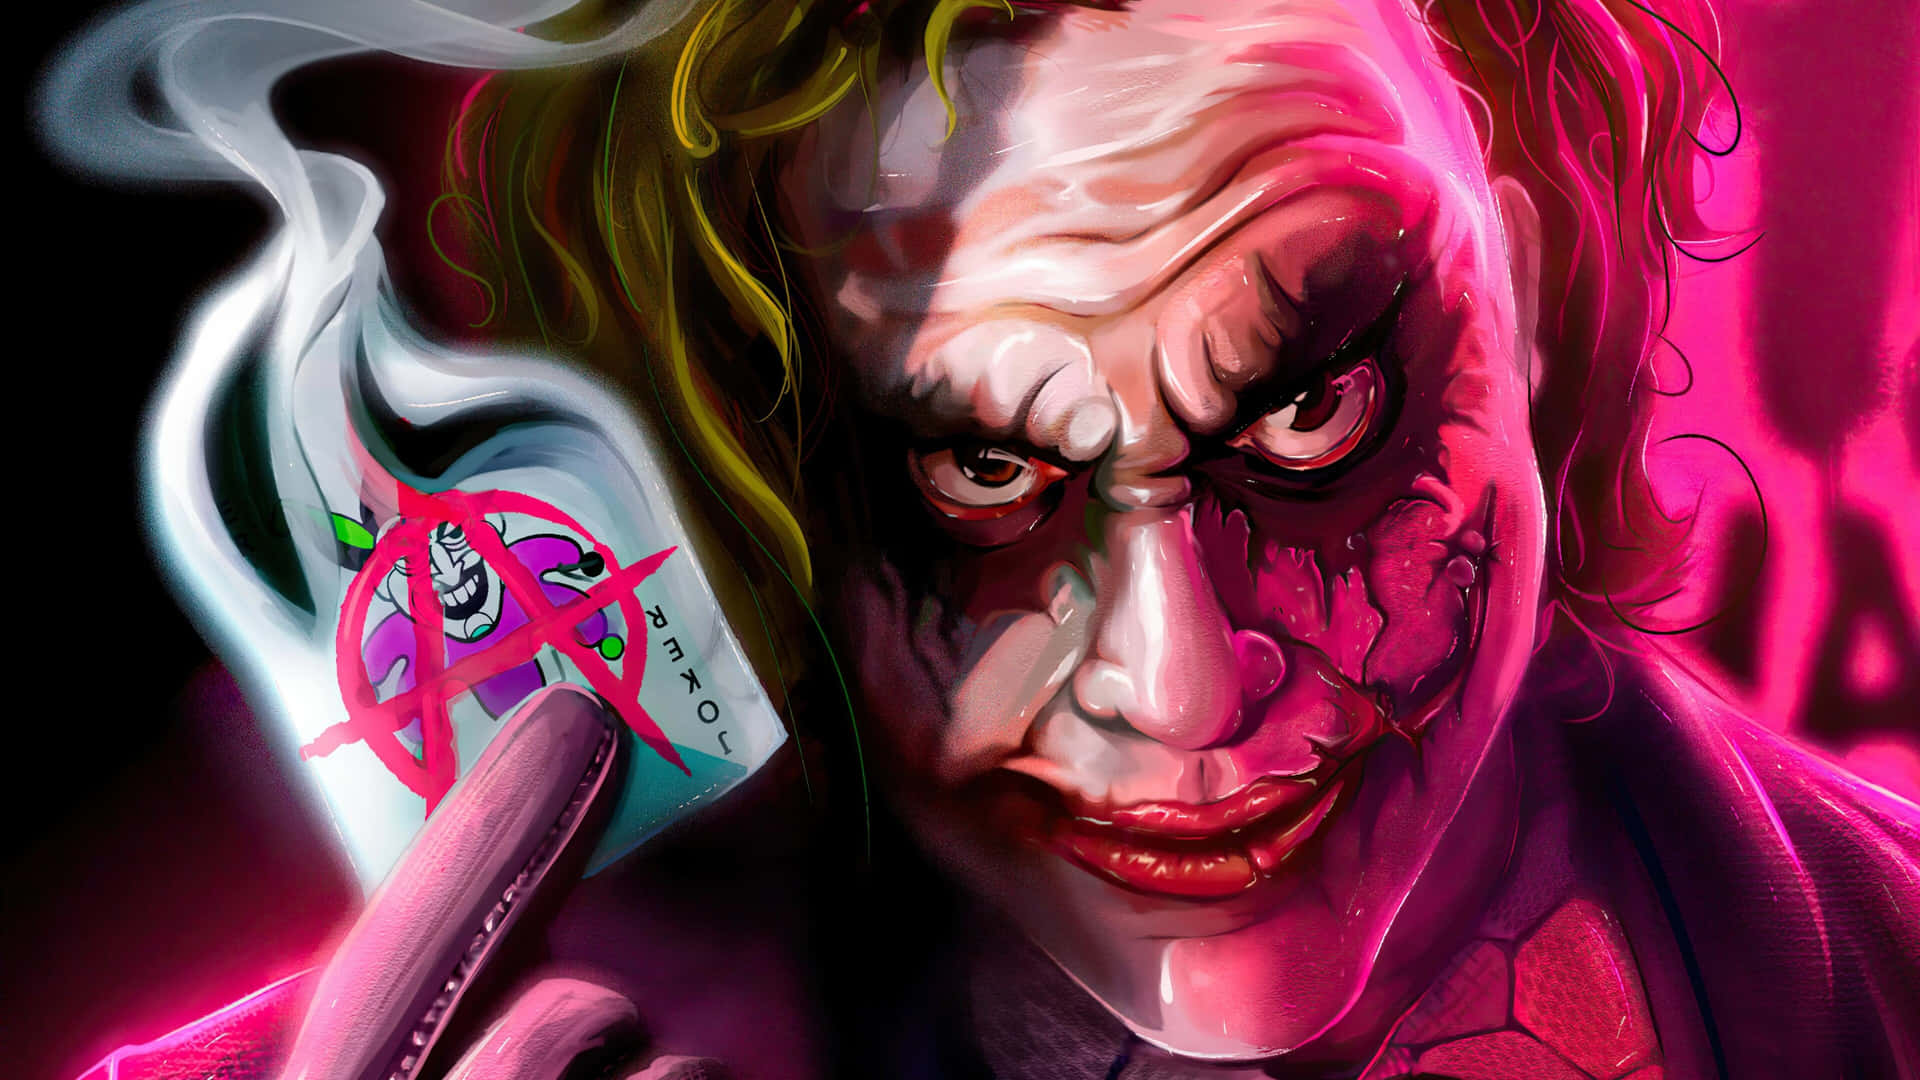 The Joker Cartoon HD Wallpaper